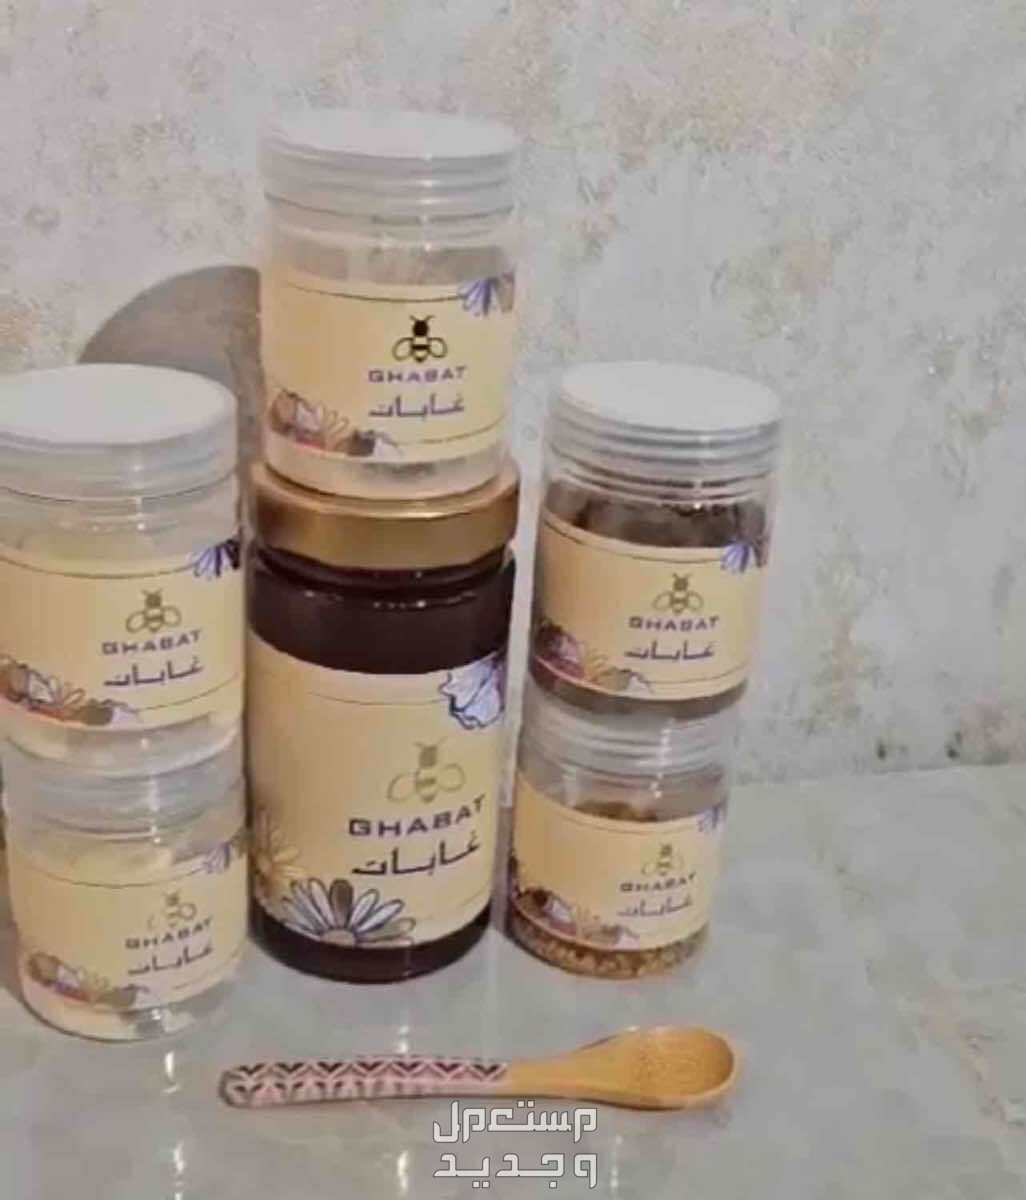 عسل صحي ومفيد في الرياض بسعر 500 ريال سعودي عسل غابات لذيذ واصلي ييقوي المناعه